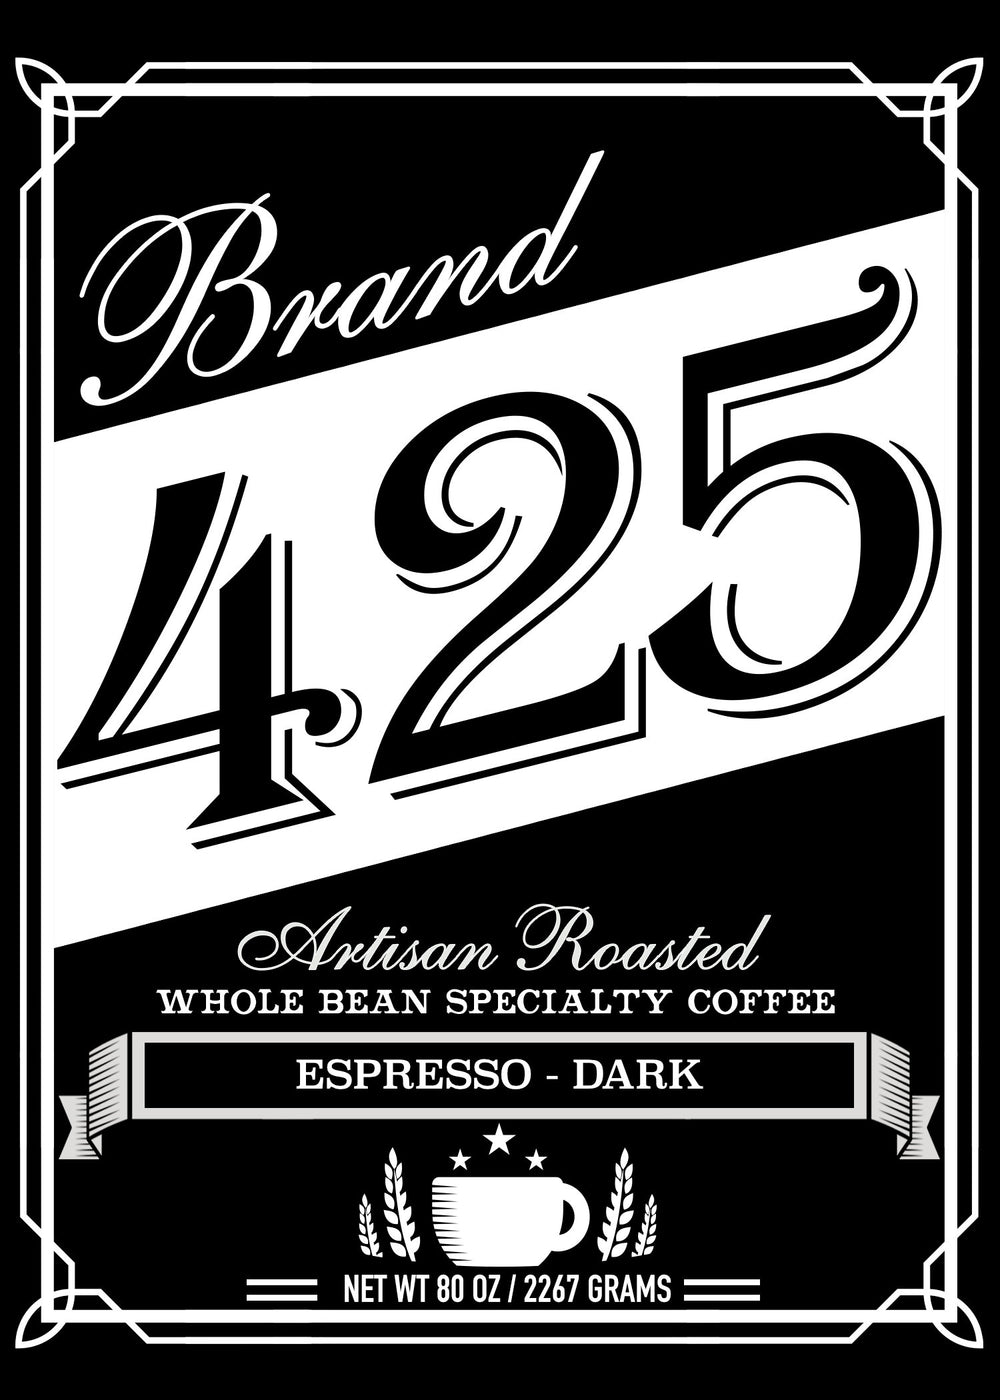 Texas Coffee Roasters Specialty Espresso Dark Roast 80oz / 2267grams